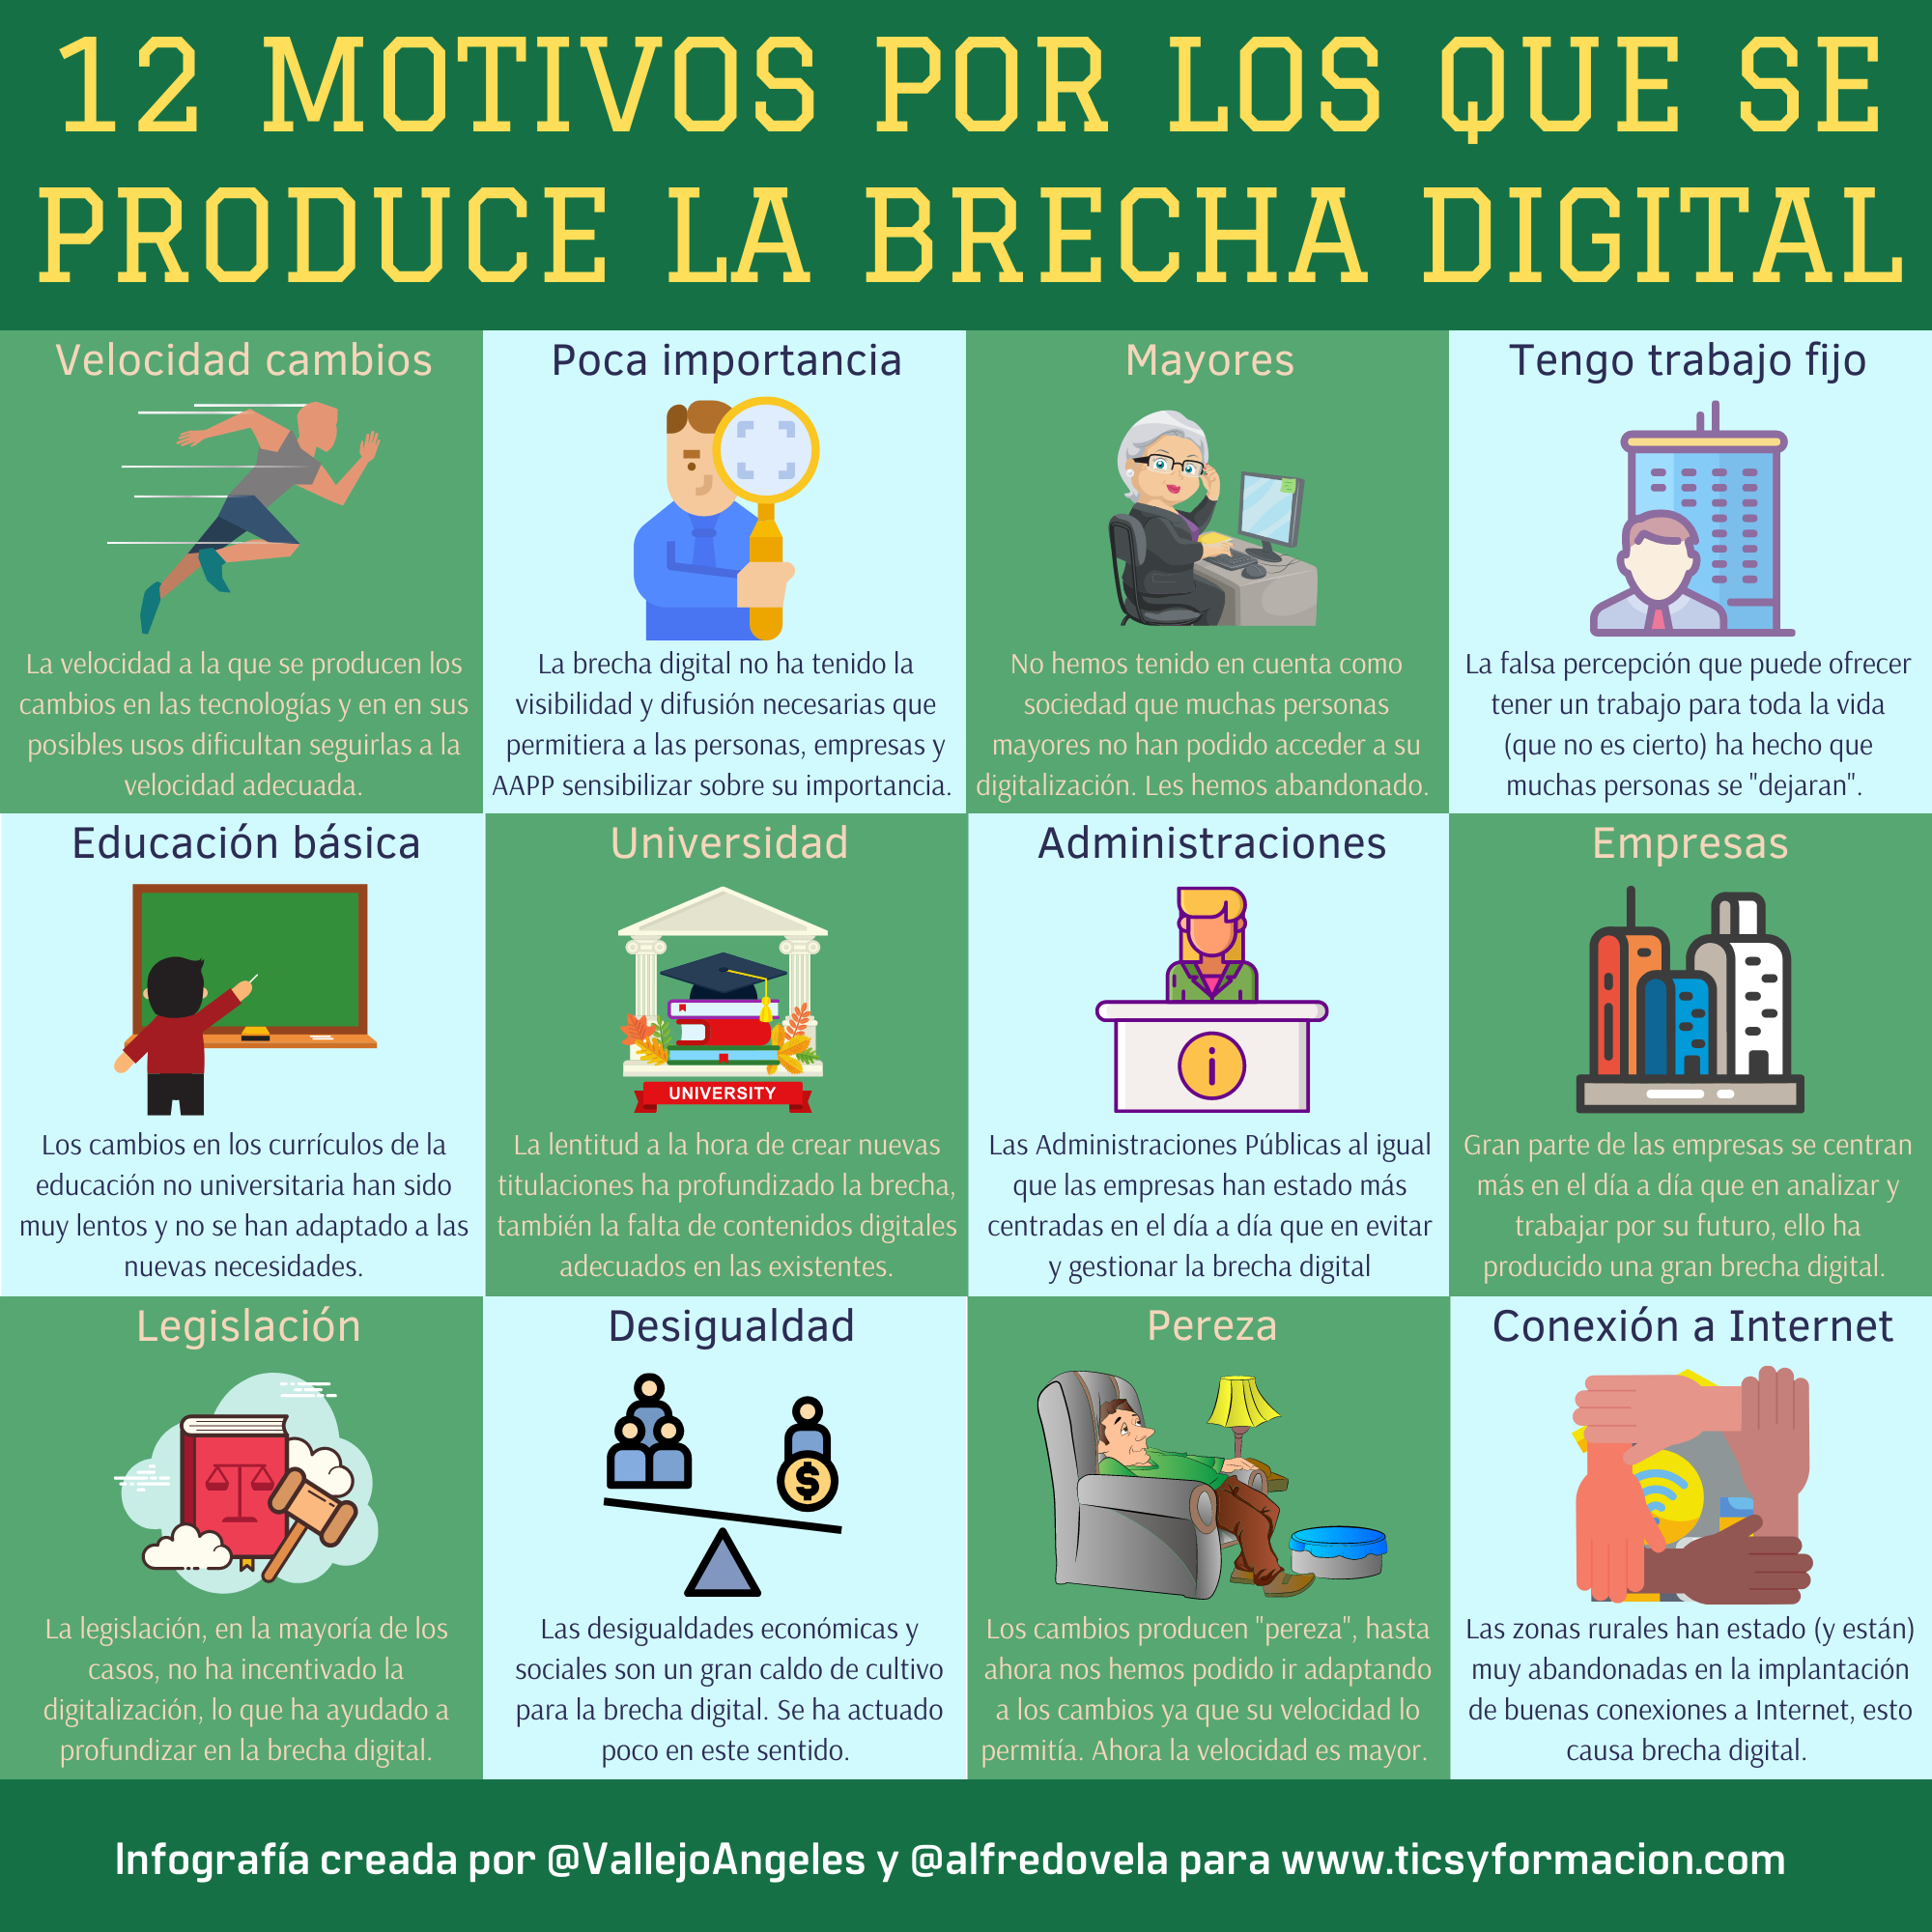 12 motivos por los que se produce la Brecha Digital #infografia #brechadigital